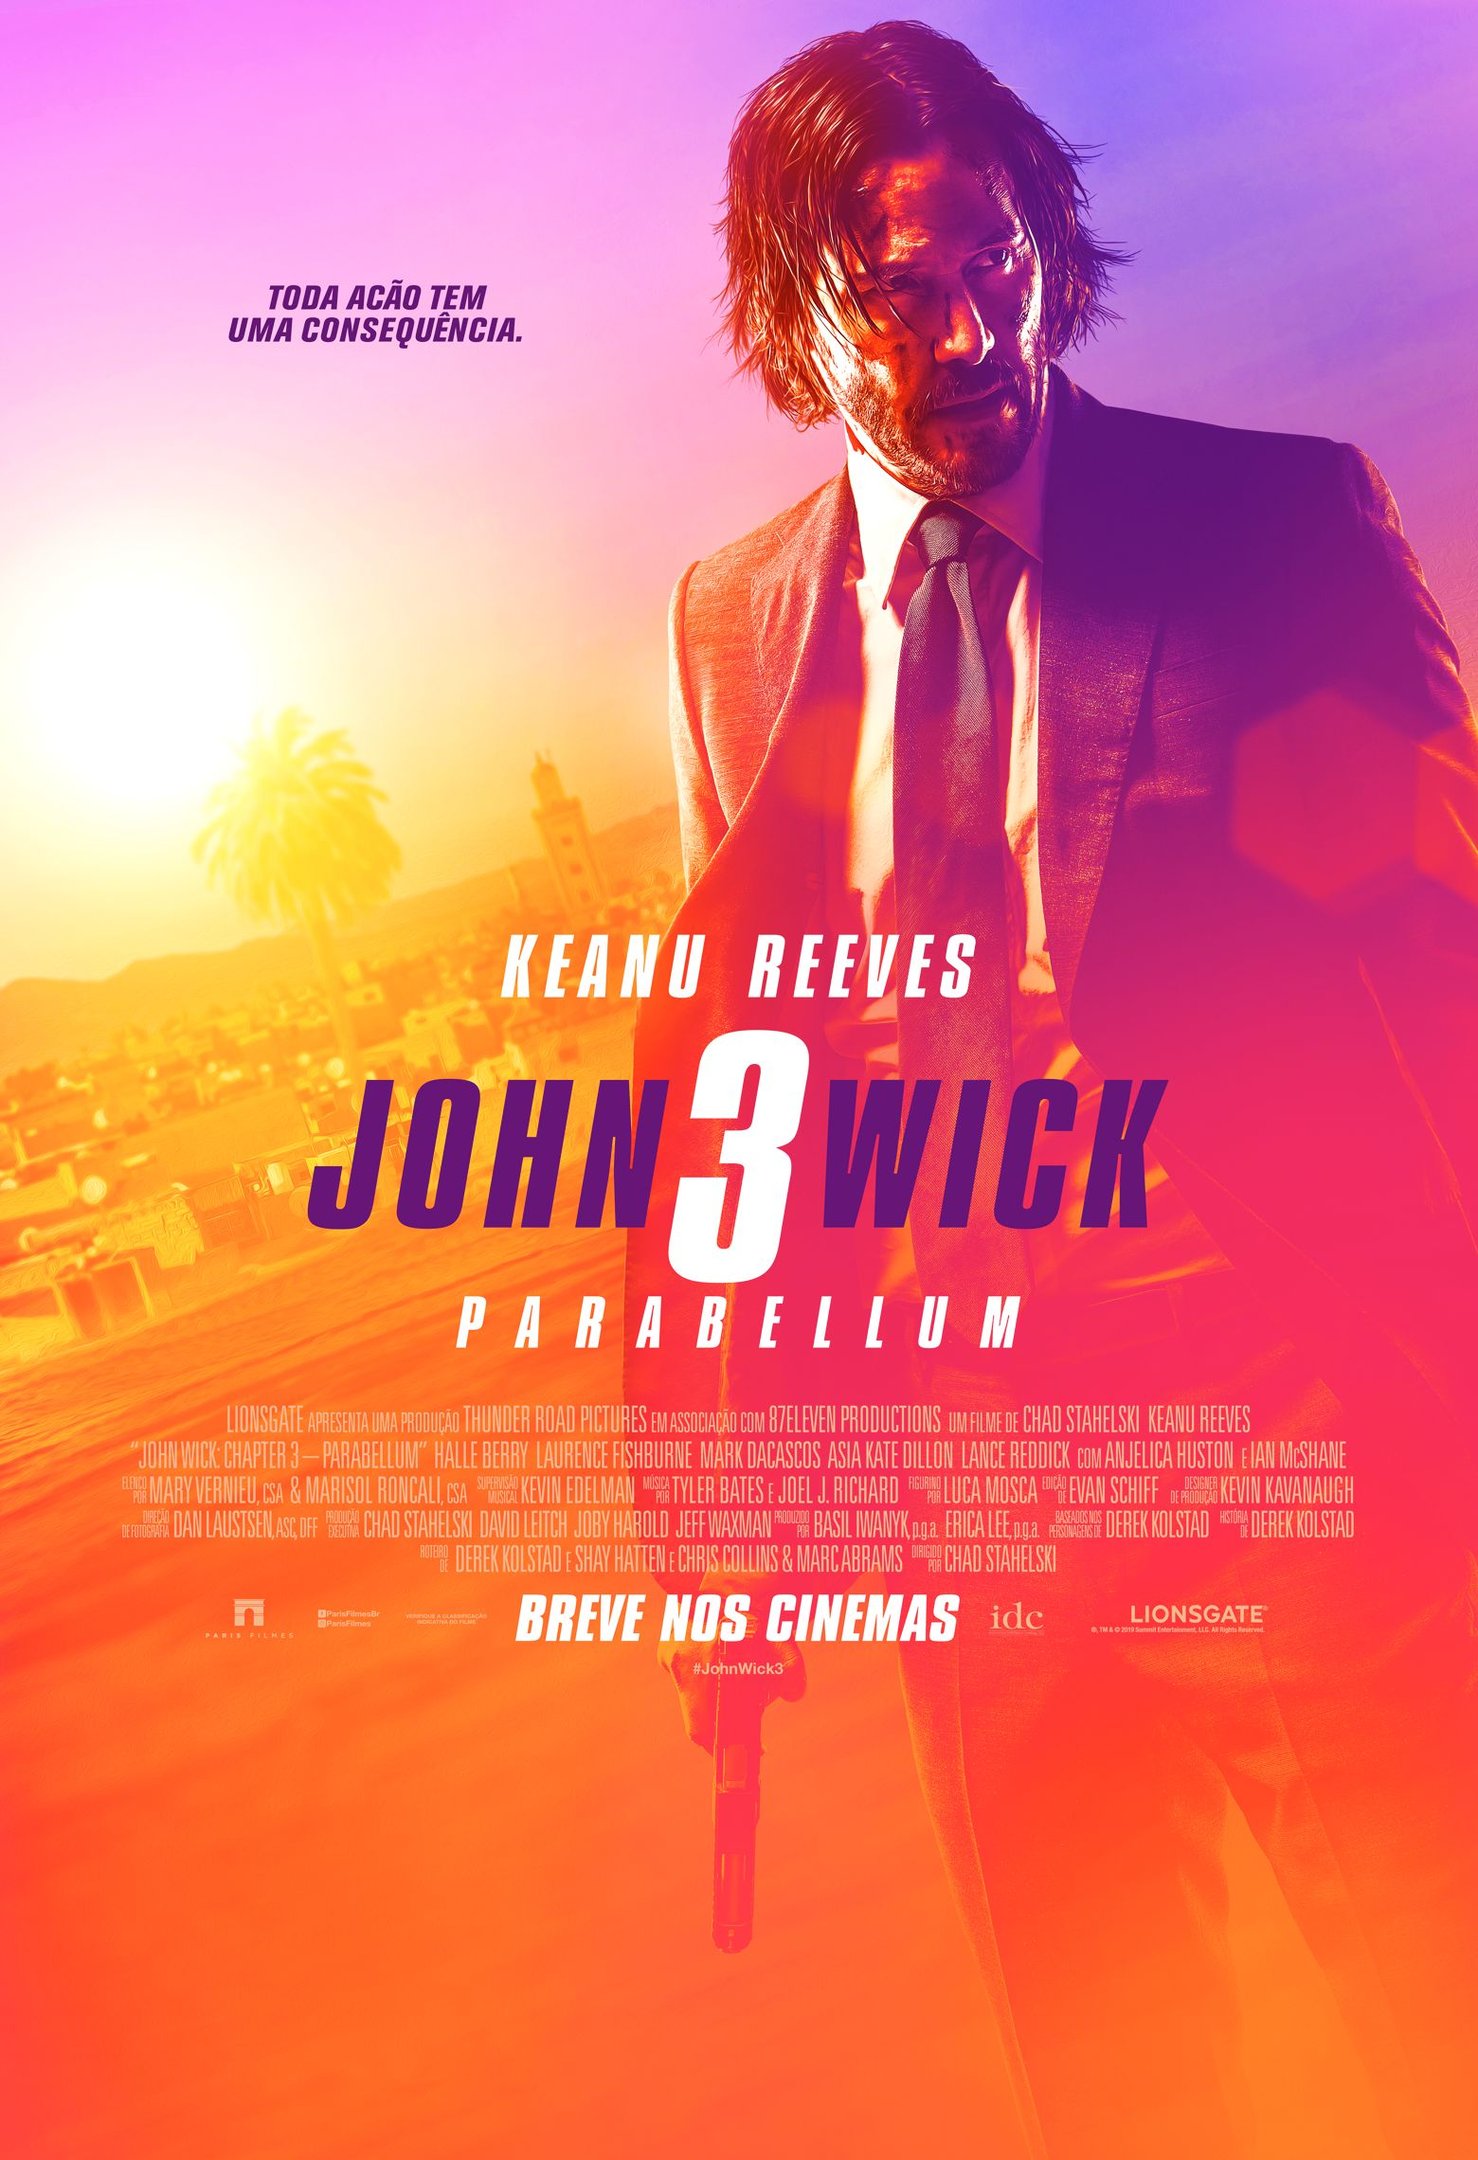 O desejo de morte de John Wick, de Keanu Reeves, torna toda a conversa de John  Wick 5 ainda pior